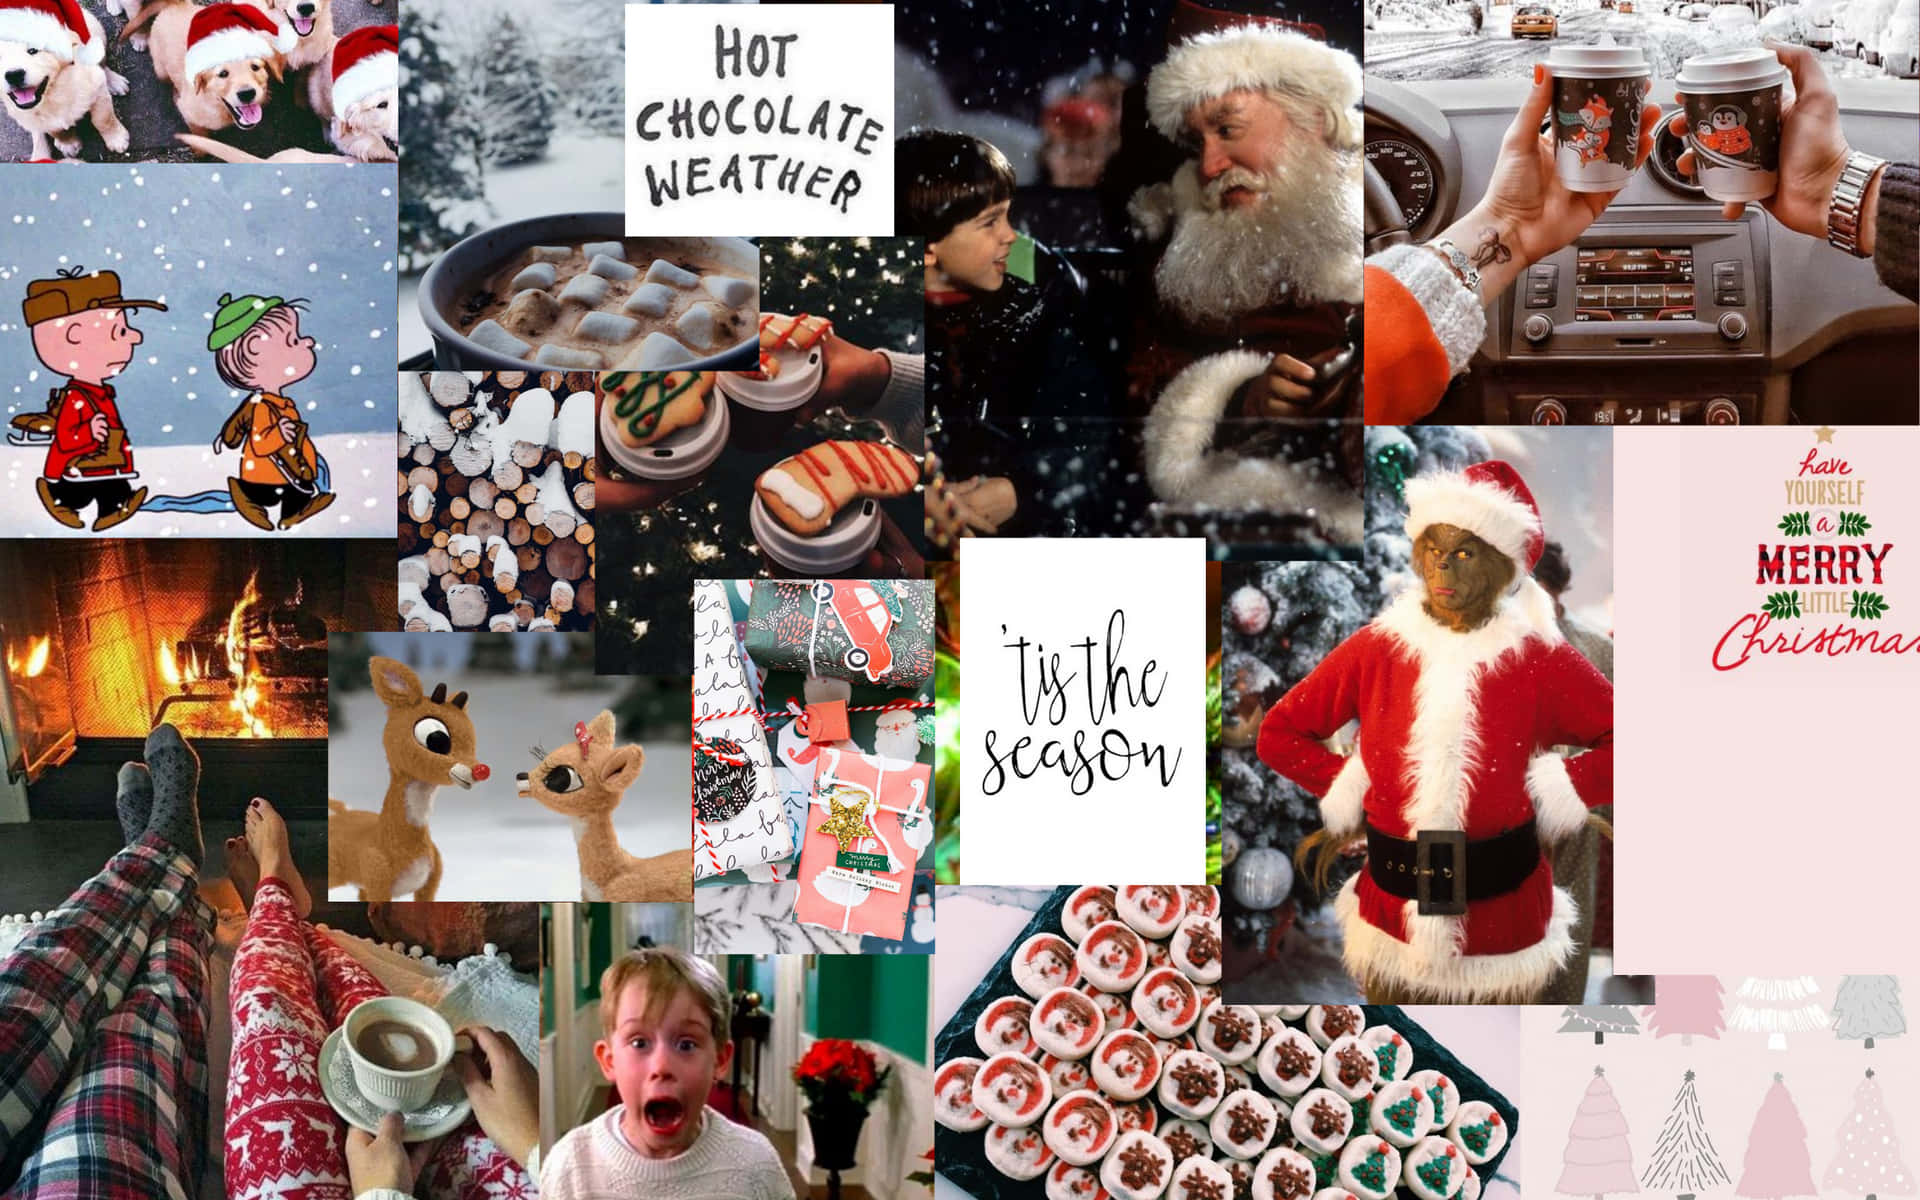 Einecollage Mit Weihnachtsbildern Von Santa Claus Und Einem Weihnachtsbaum Wallpaper